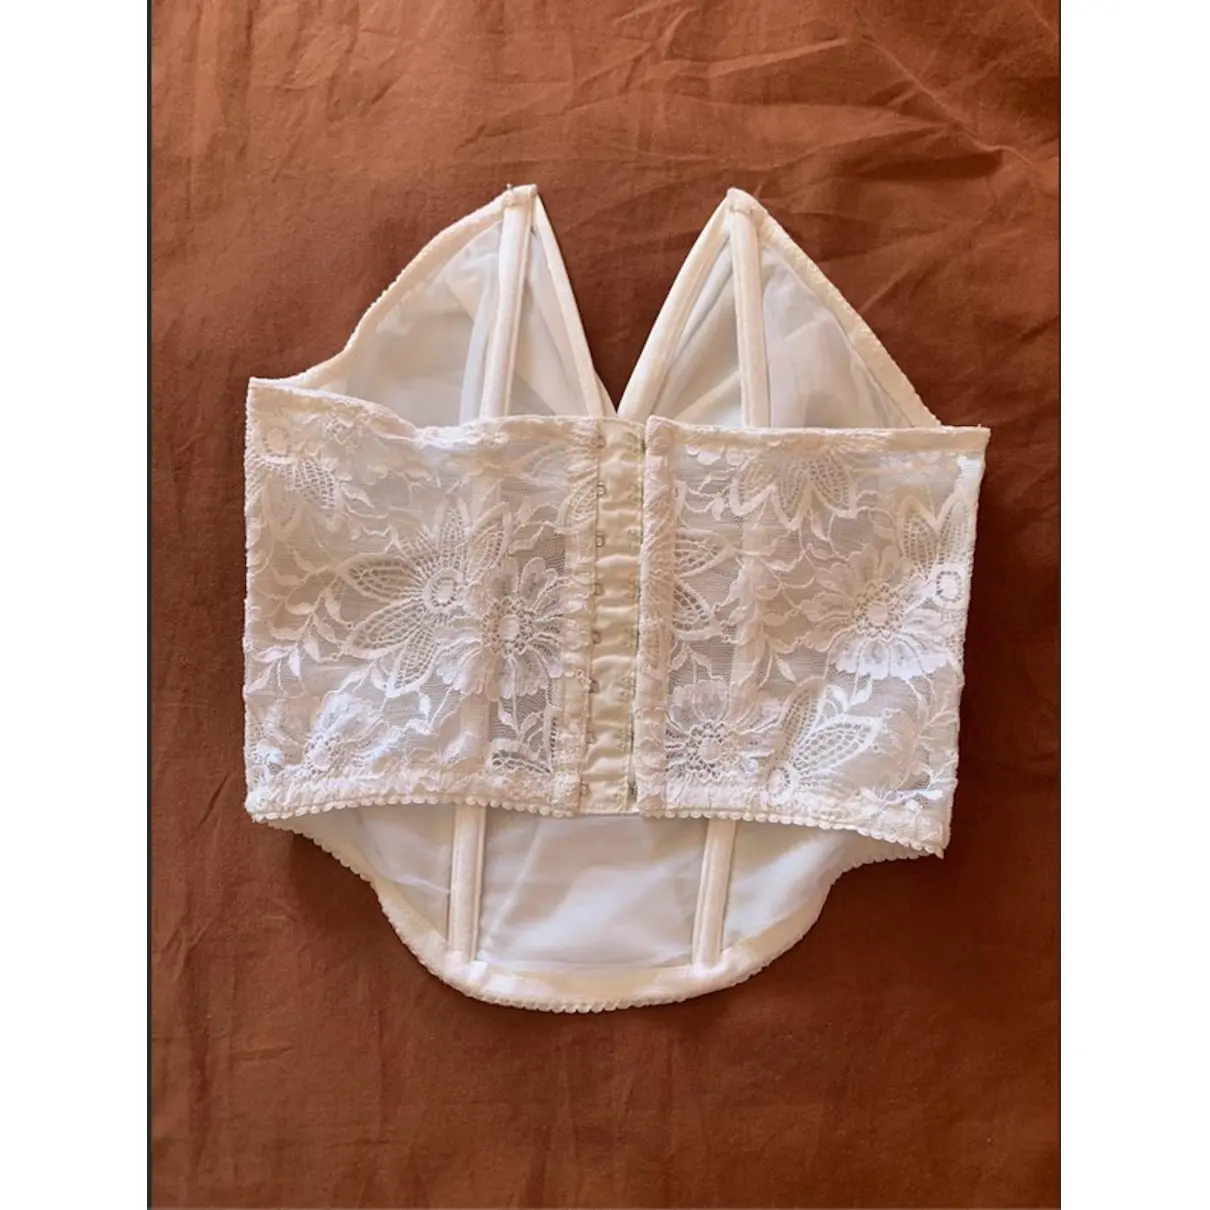 Lace corset La Perla - Vintage